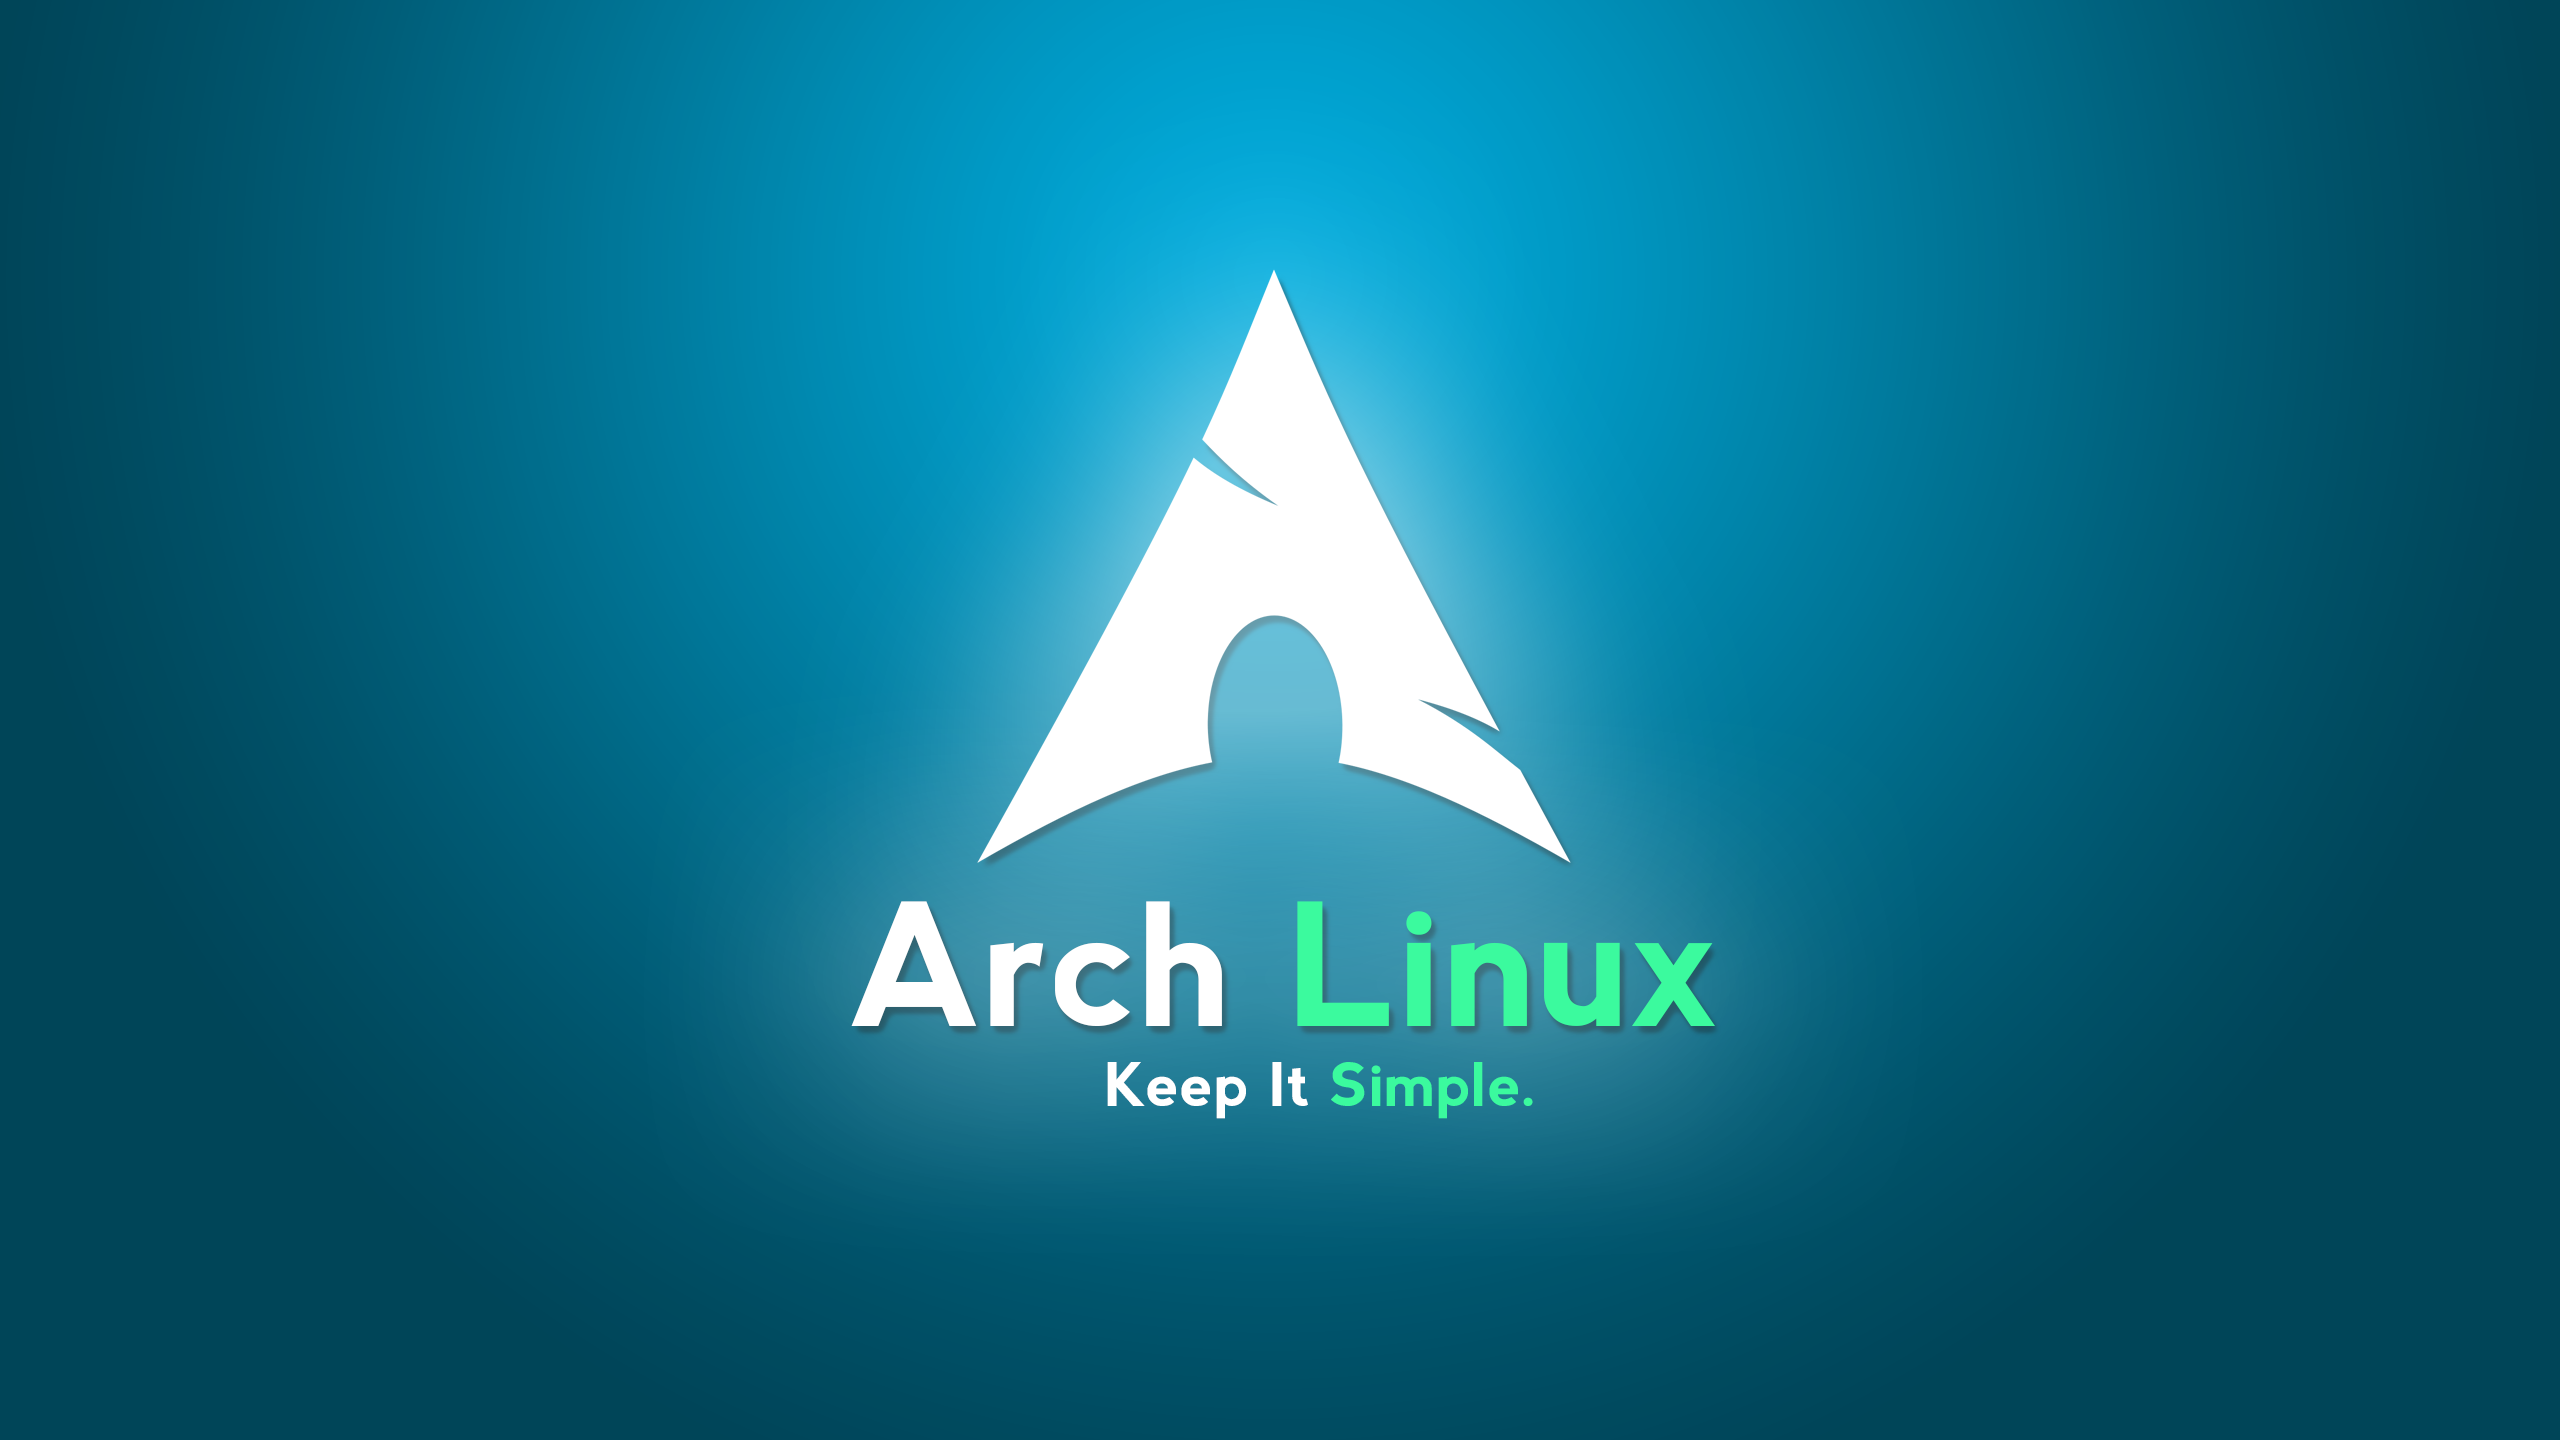 아치 리눅스 벽지,그래픽 디자인,아쿠아,폰트,제도법,삼각형